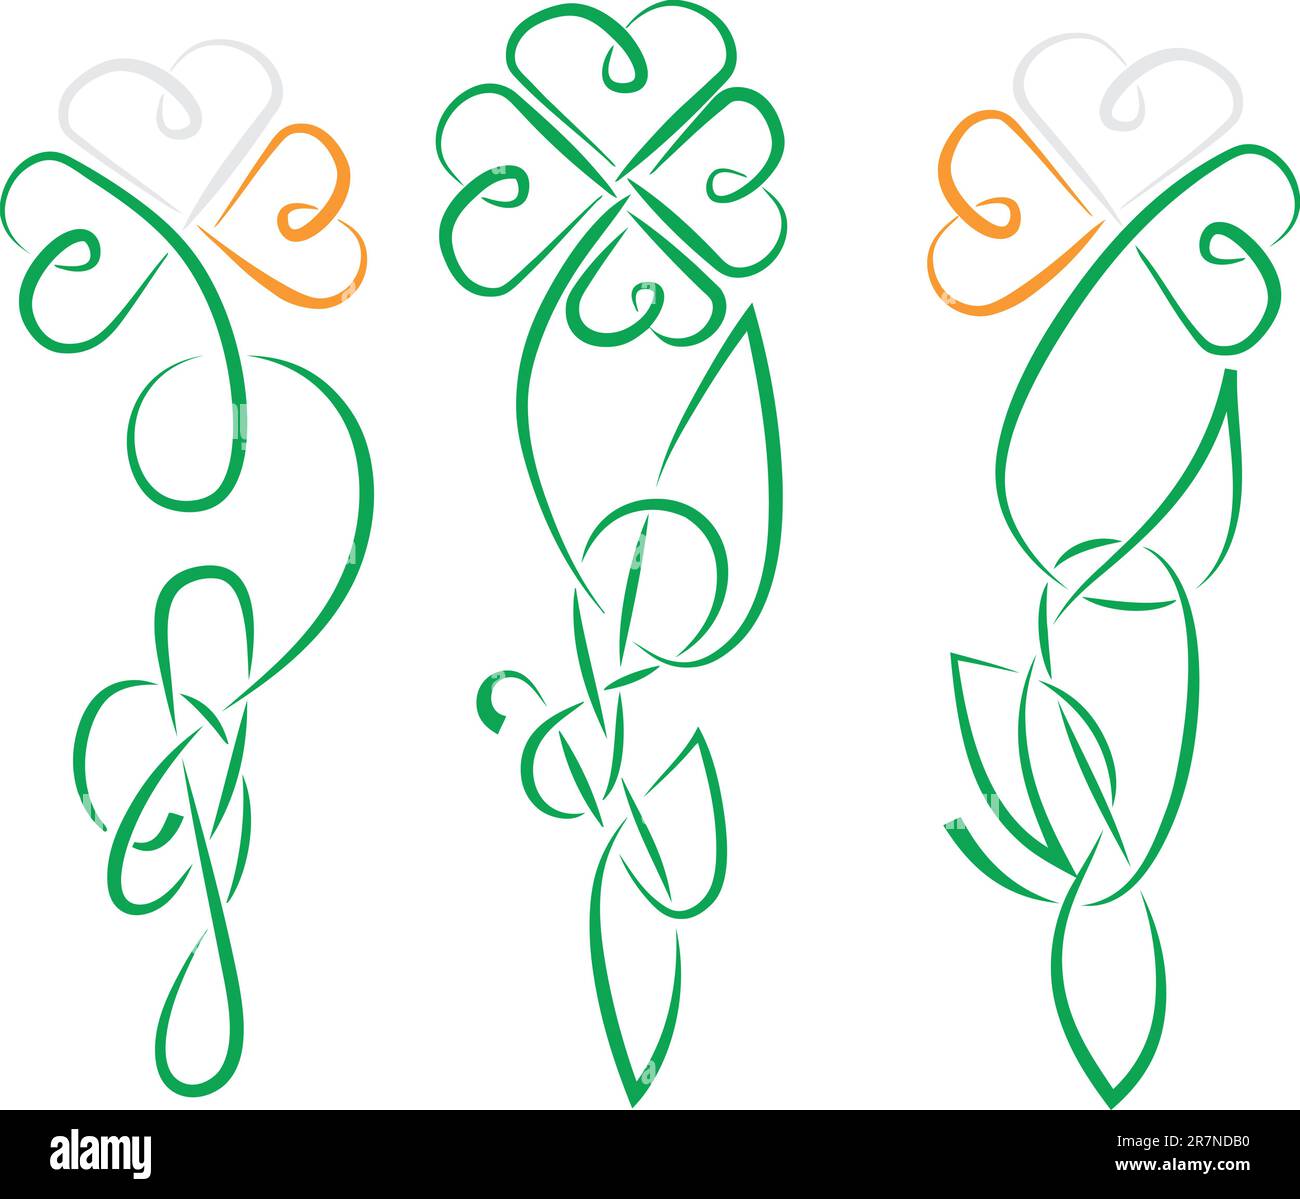 Les shamrock ont été faits en Irlande antique ou le style celtique Knot tous les détails sont séparés, la couleur facile à changer, en format eps8 Illustration de Vecteur